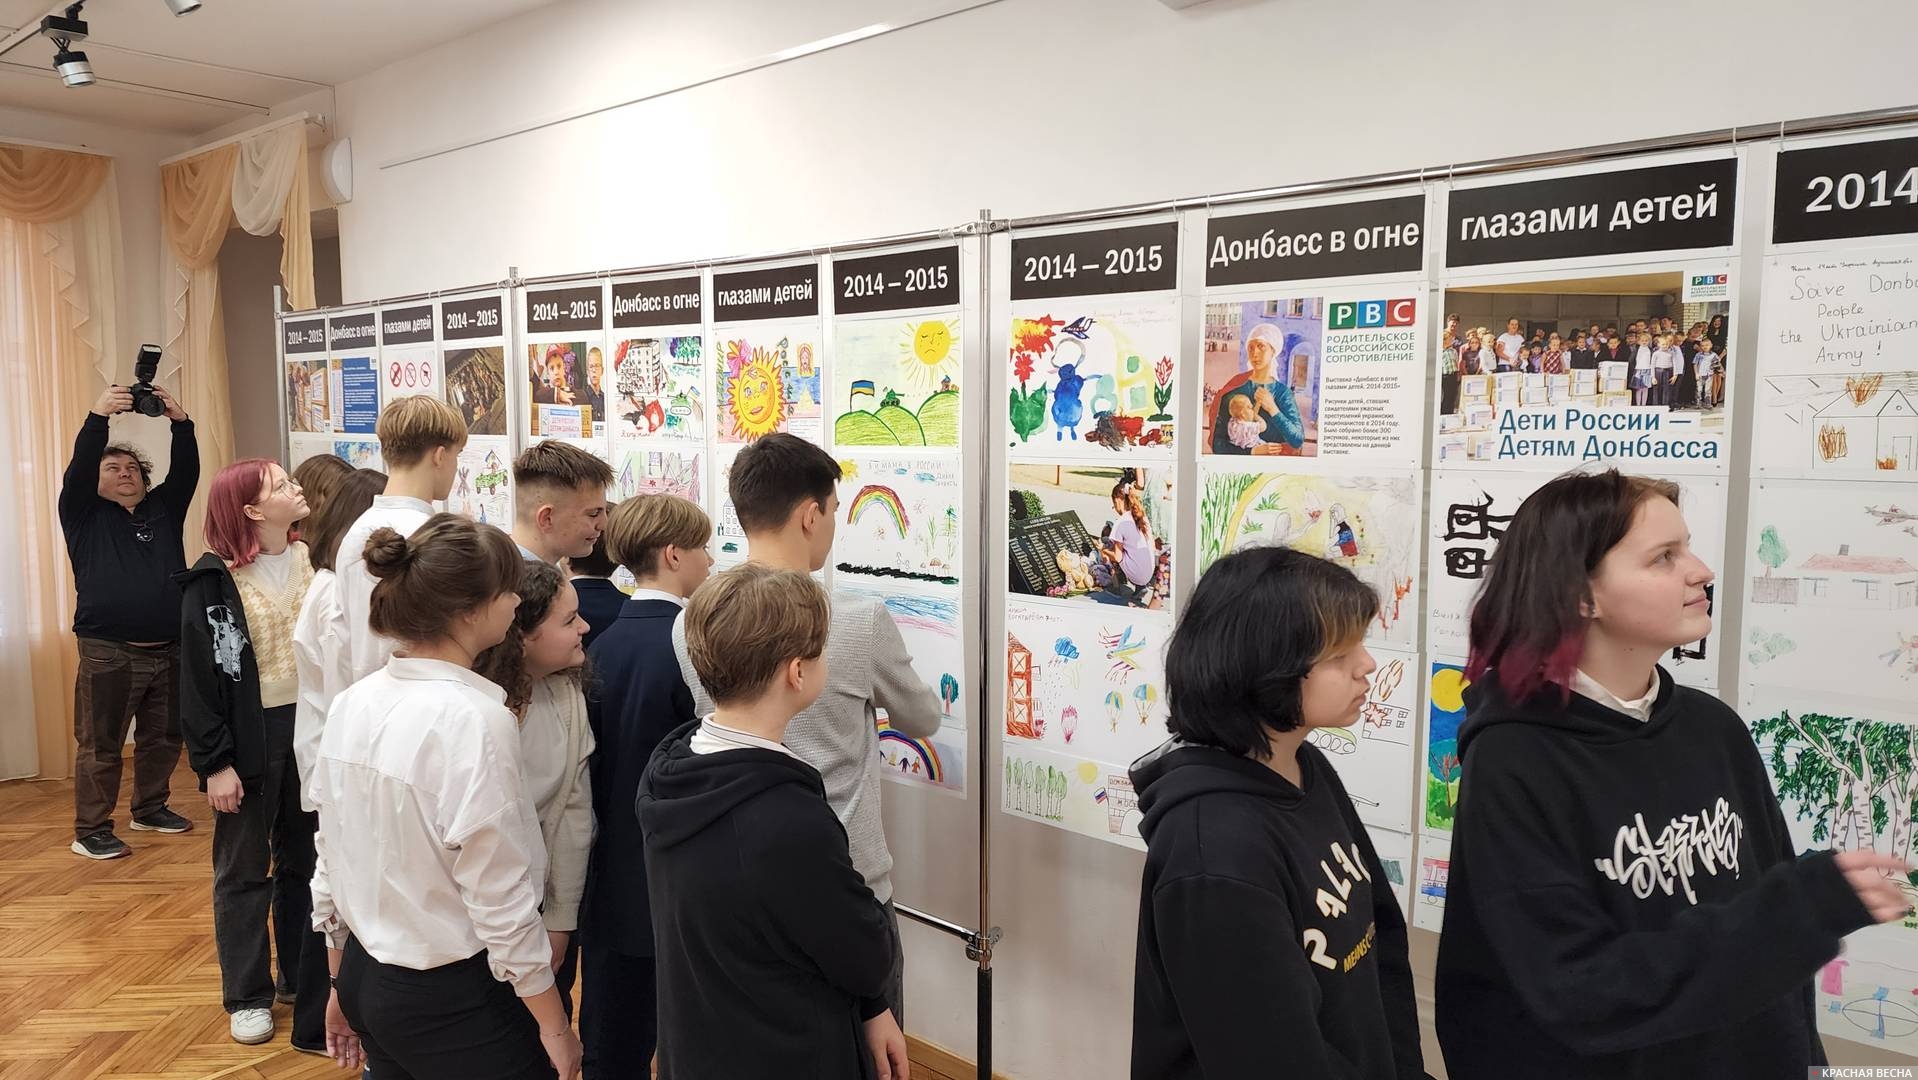 Открытие выставки «Донбасс в огне глазами детей 2014–2015» в Алуште